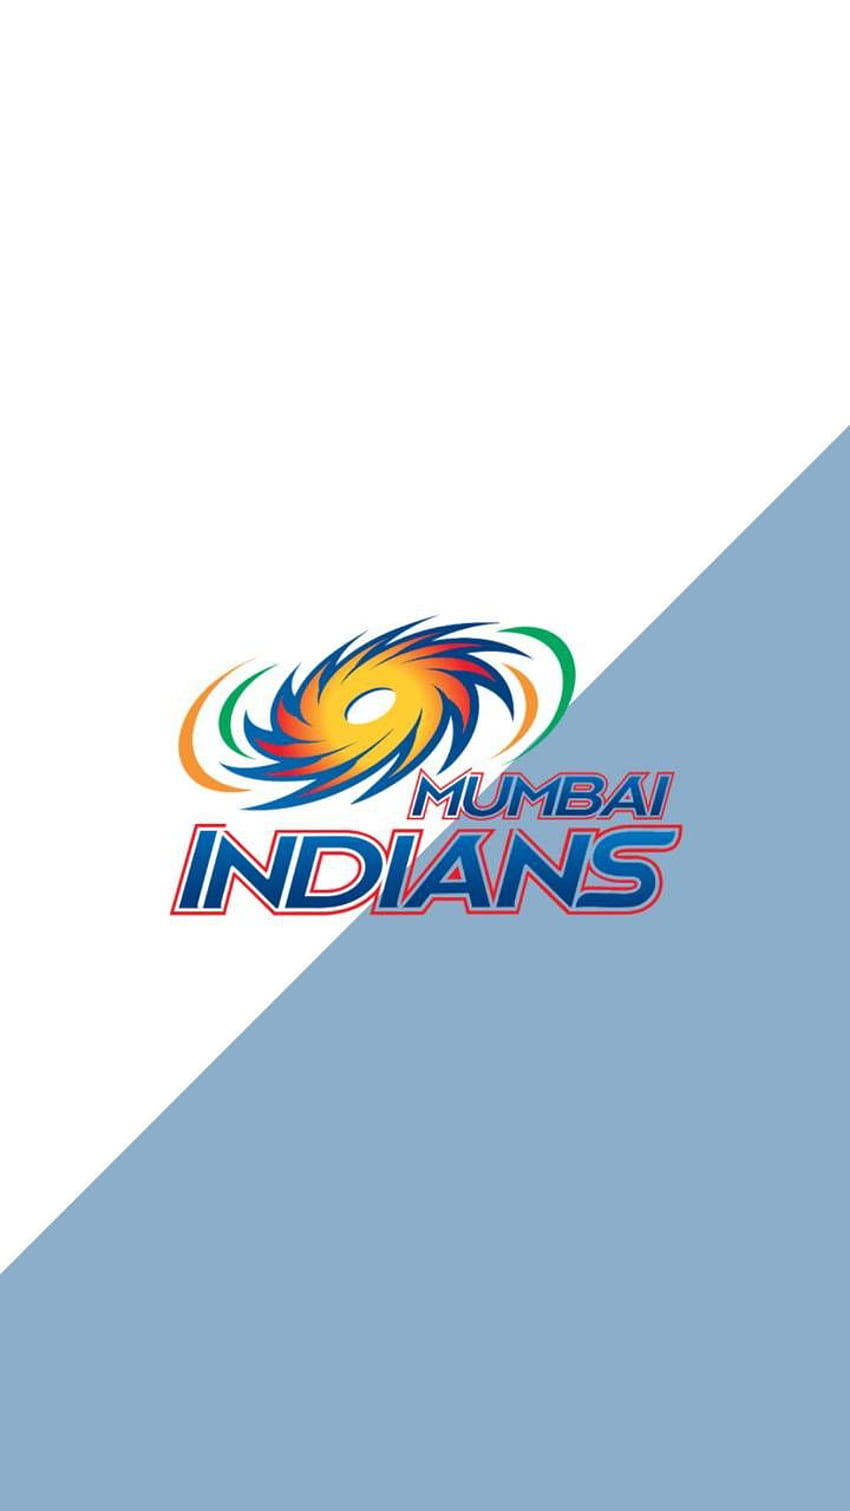 Mumbai Indians dominate digital platforms in IPL 2017-donghotantheky.vn